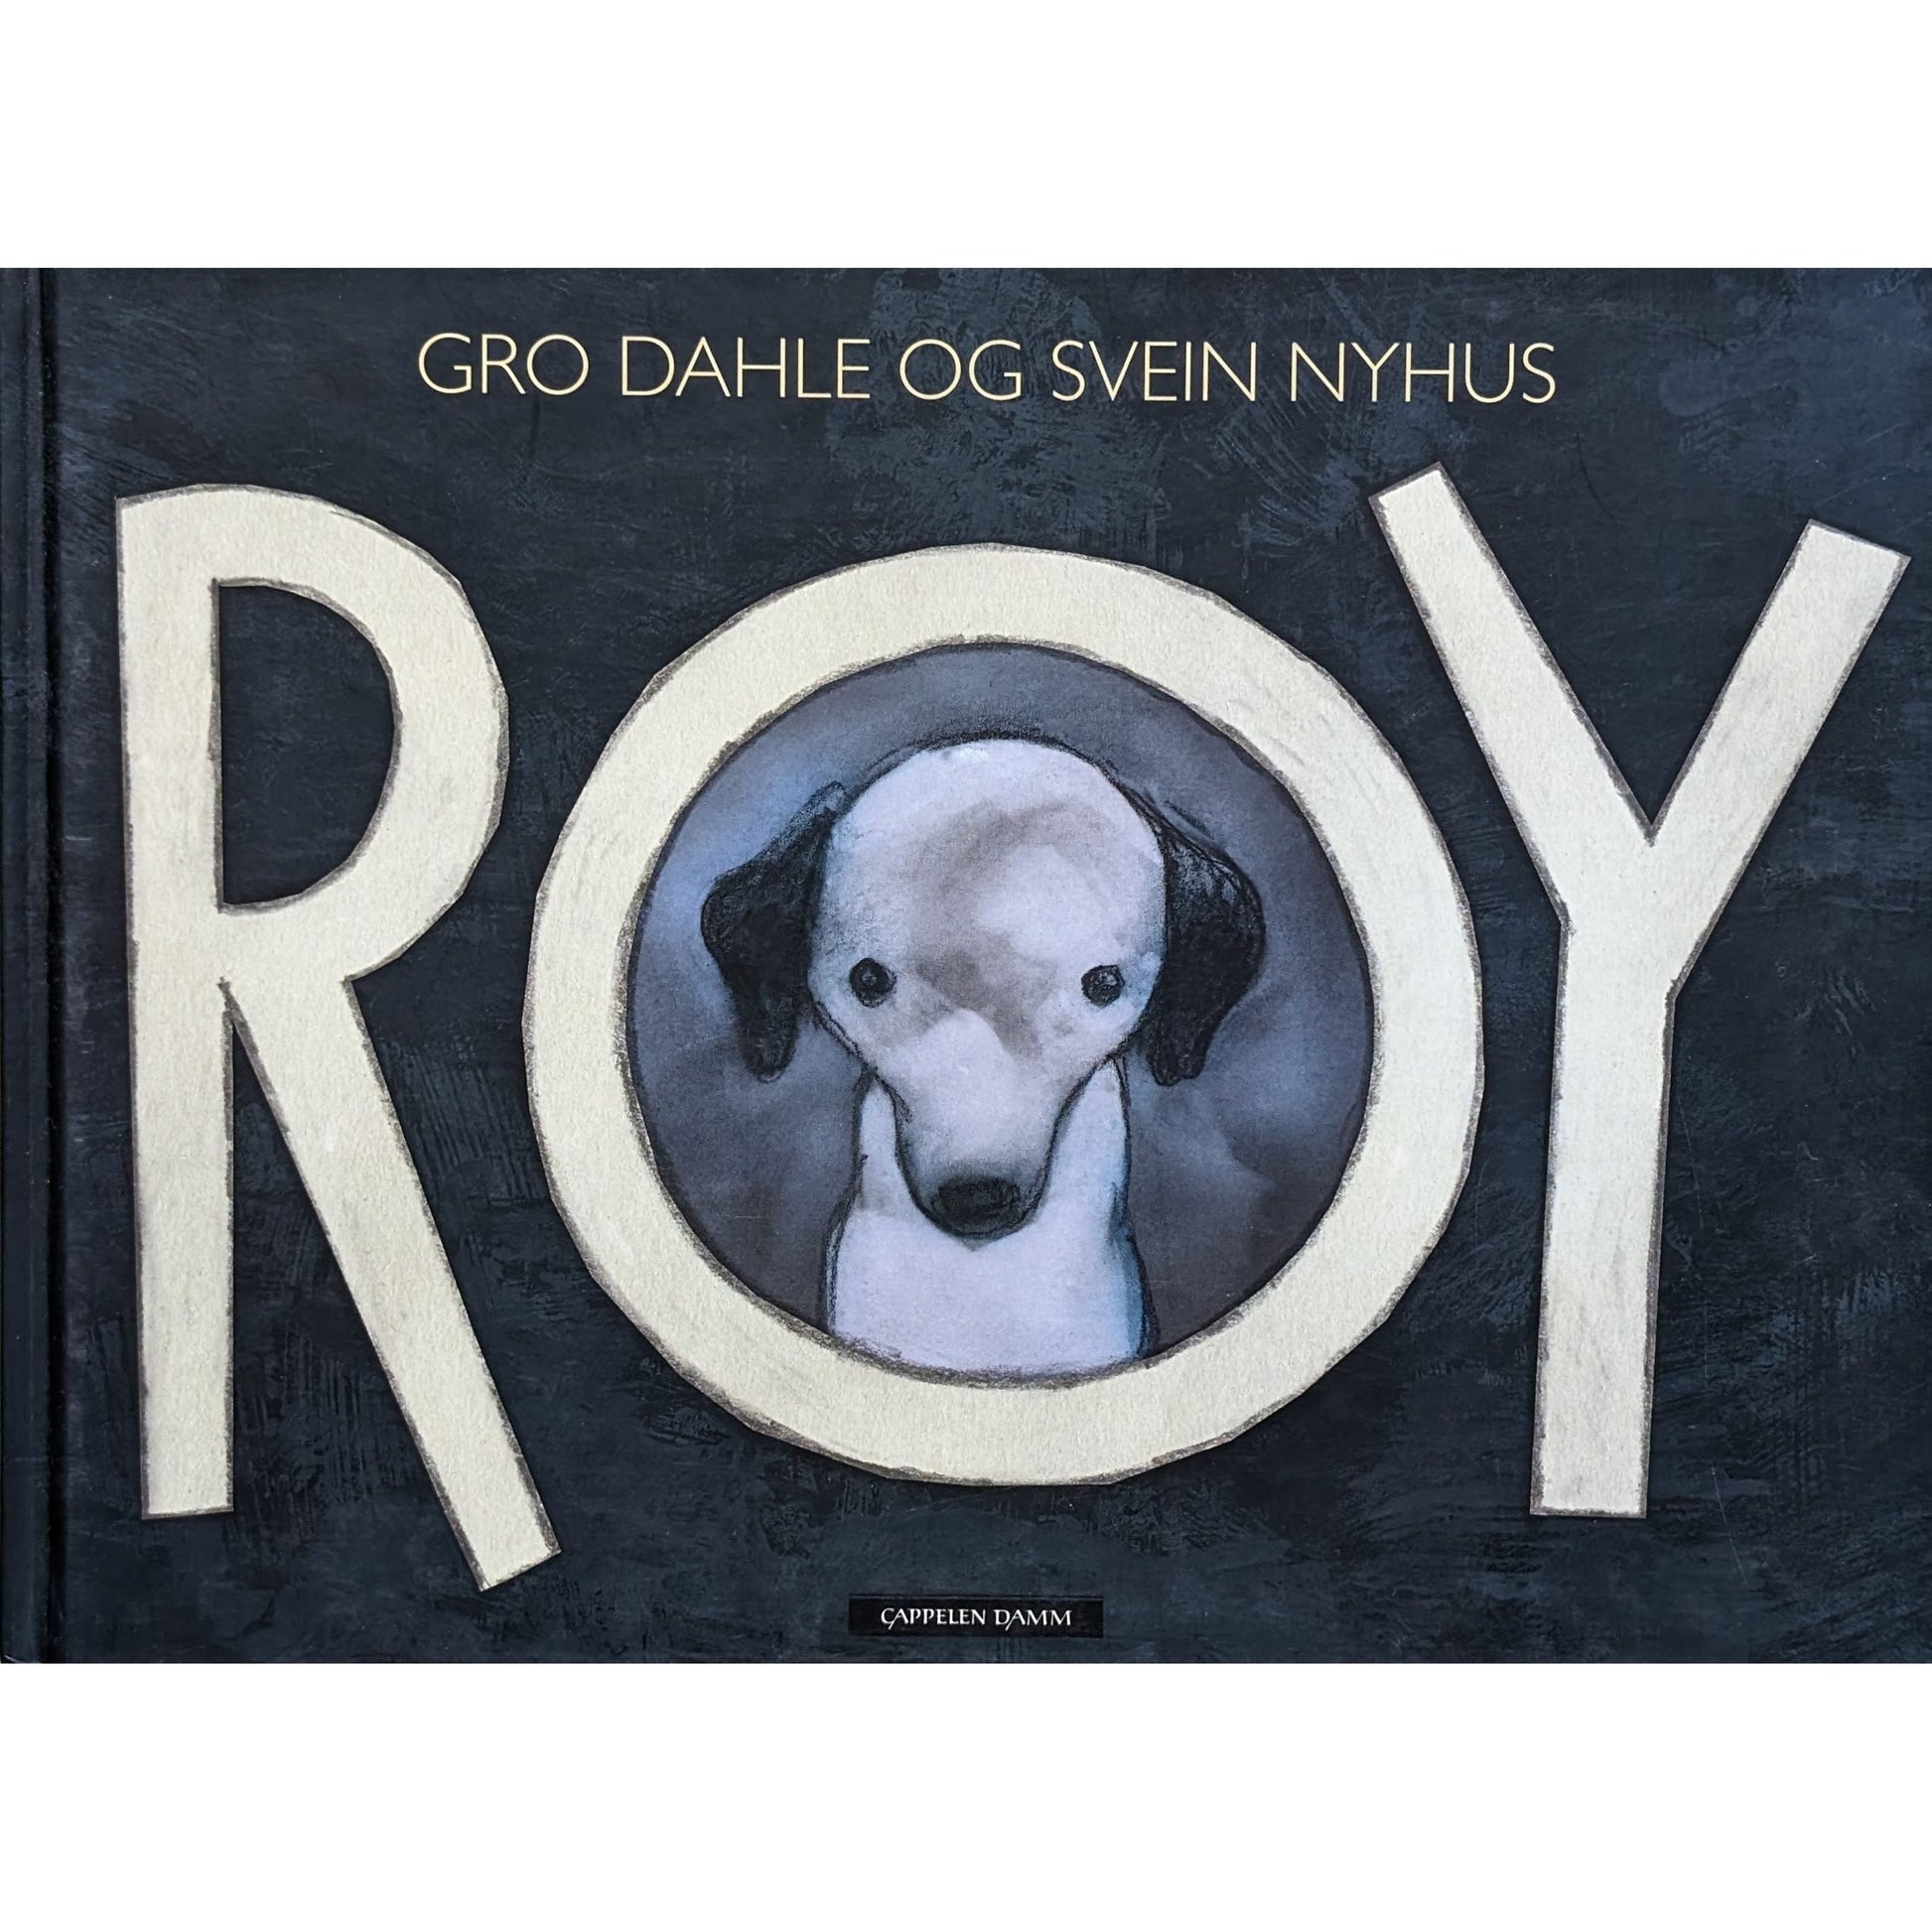 Roy, brukte bøker av Gro Dahle og Svein Nyhus